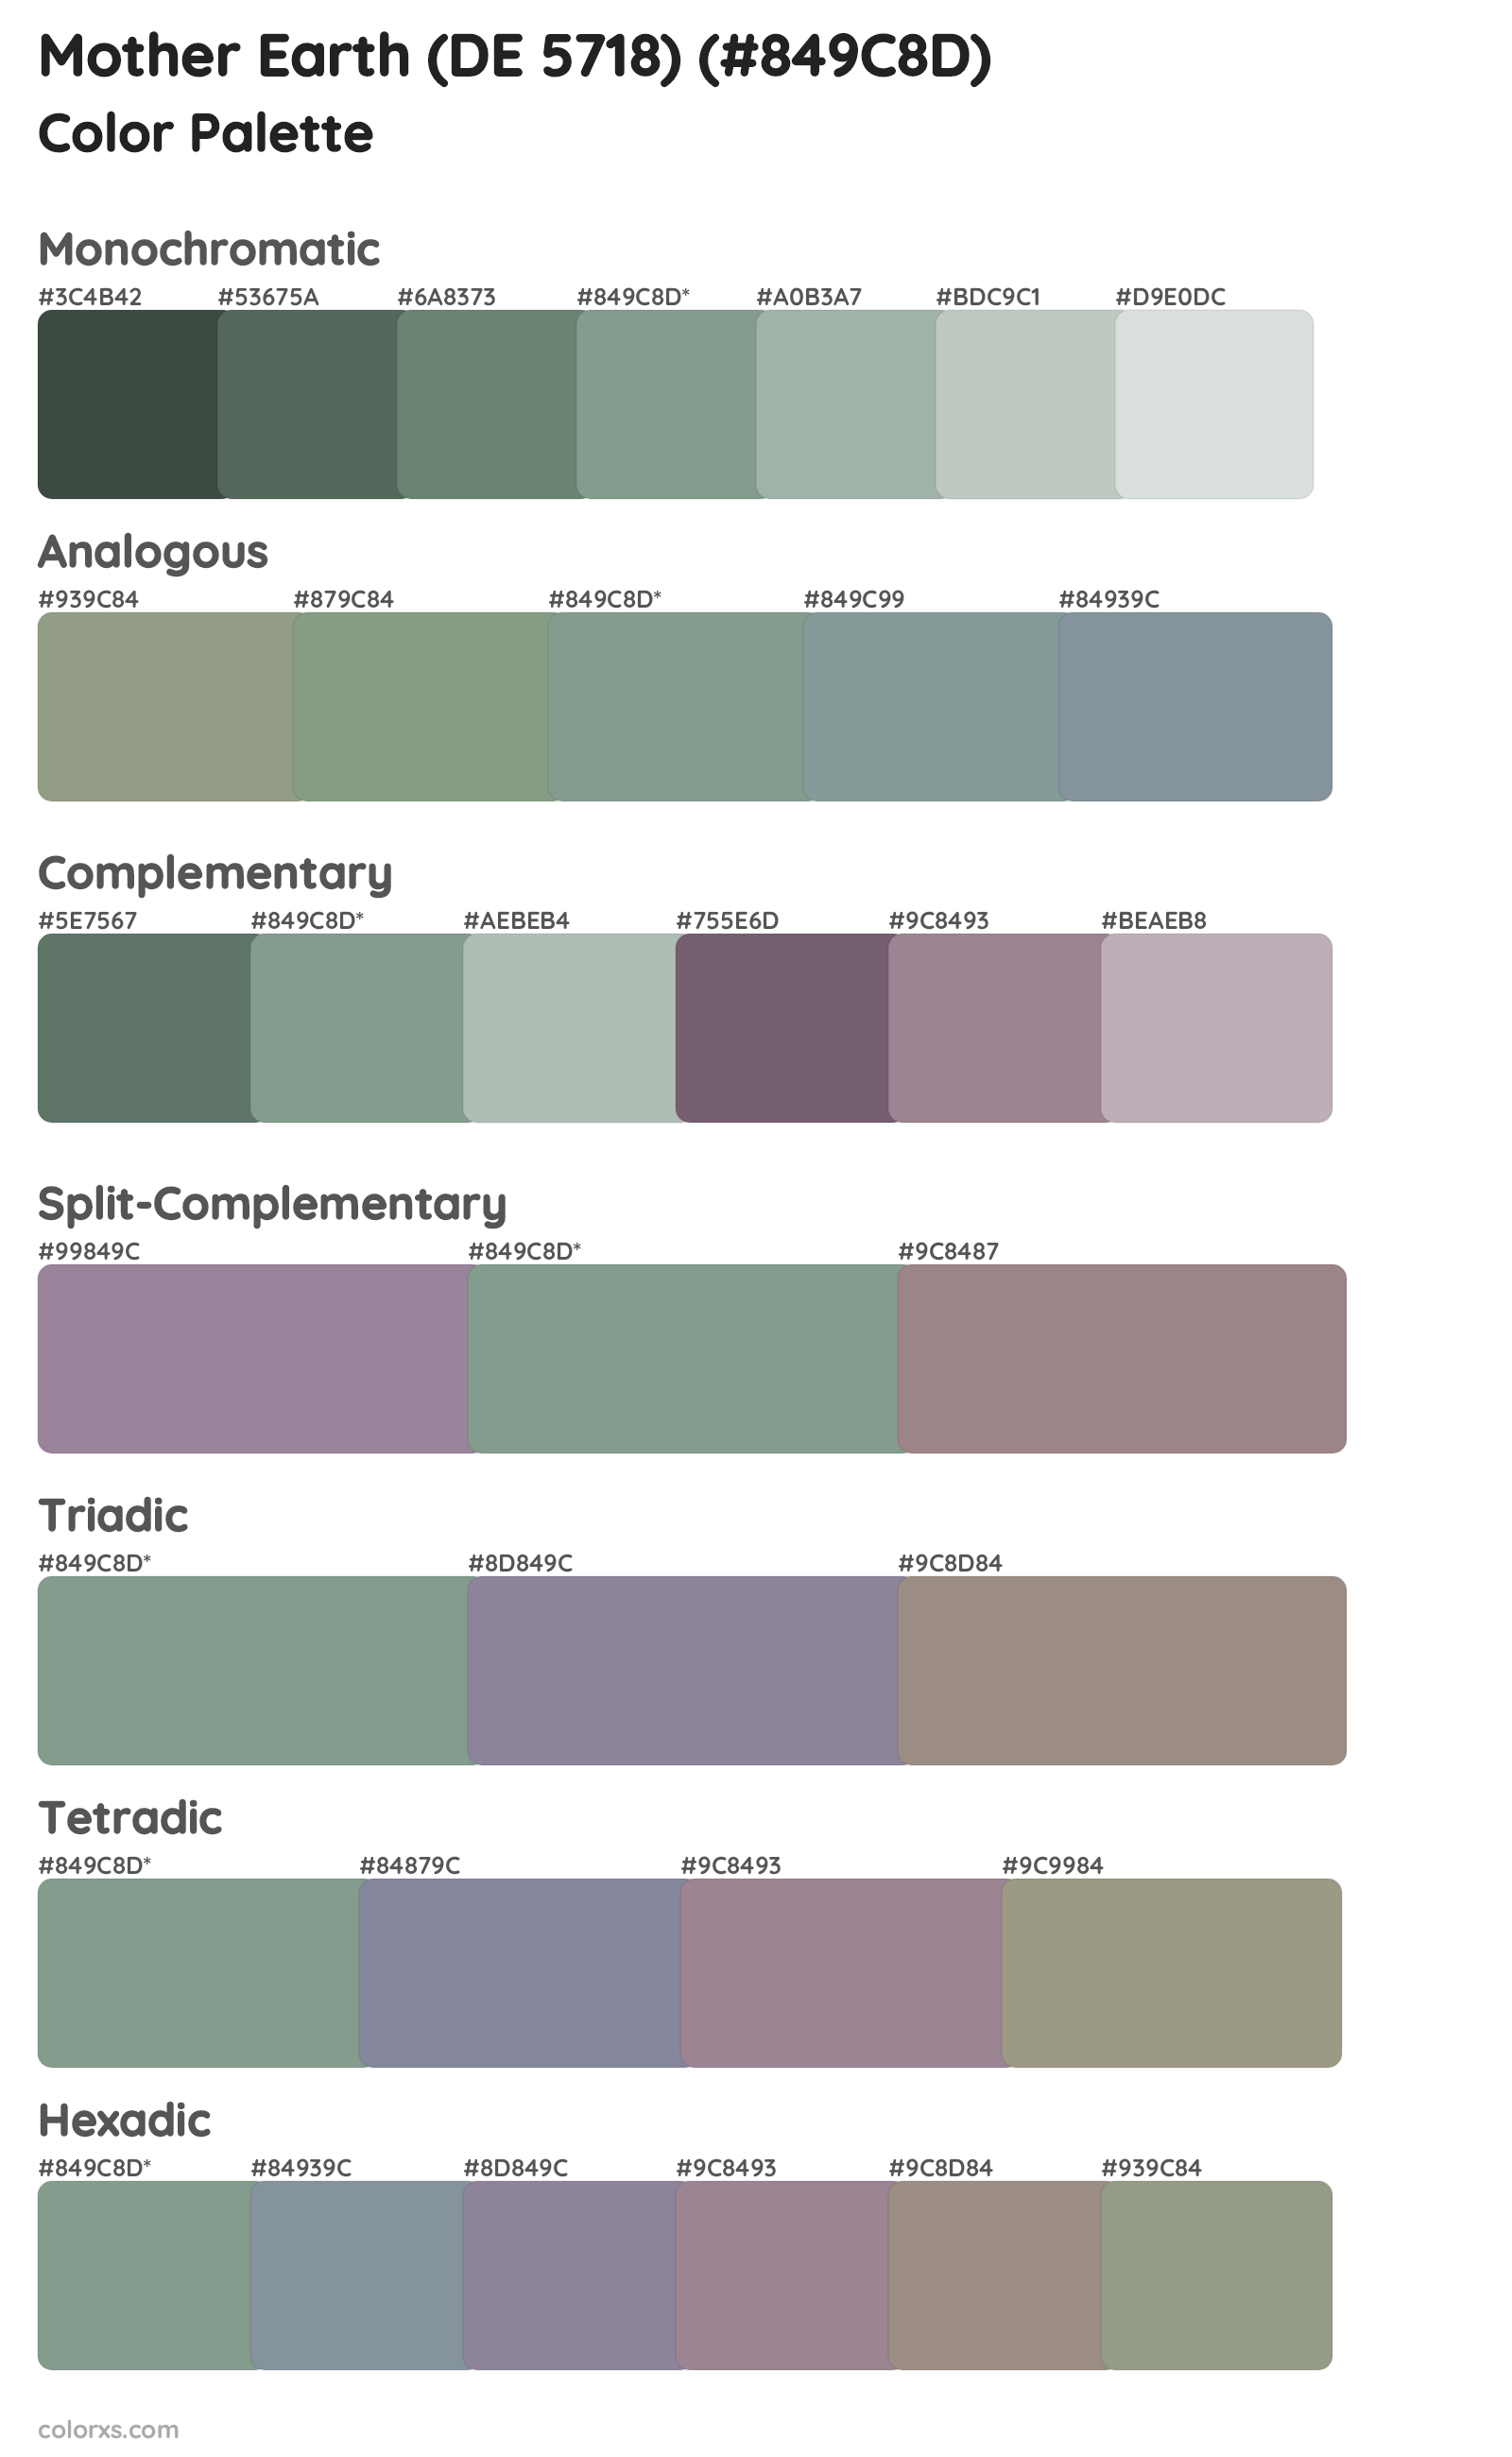 Mother Earth (DE 5718) Color Scheme Palettes